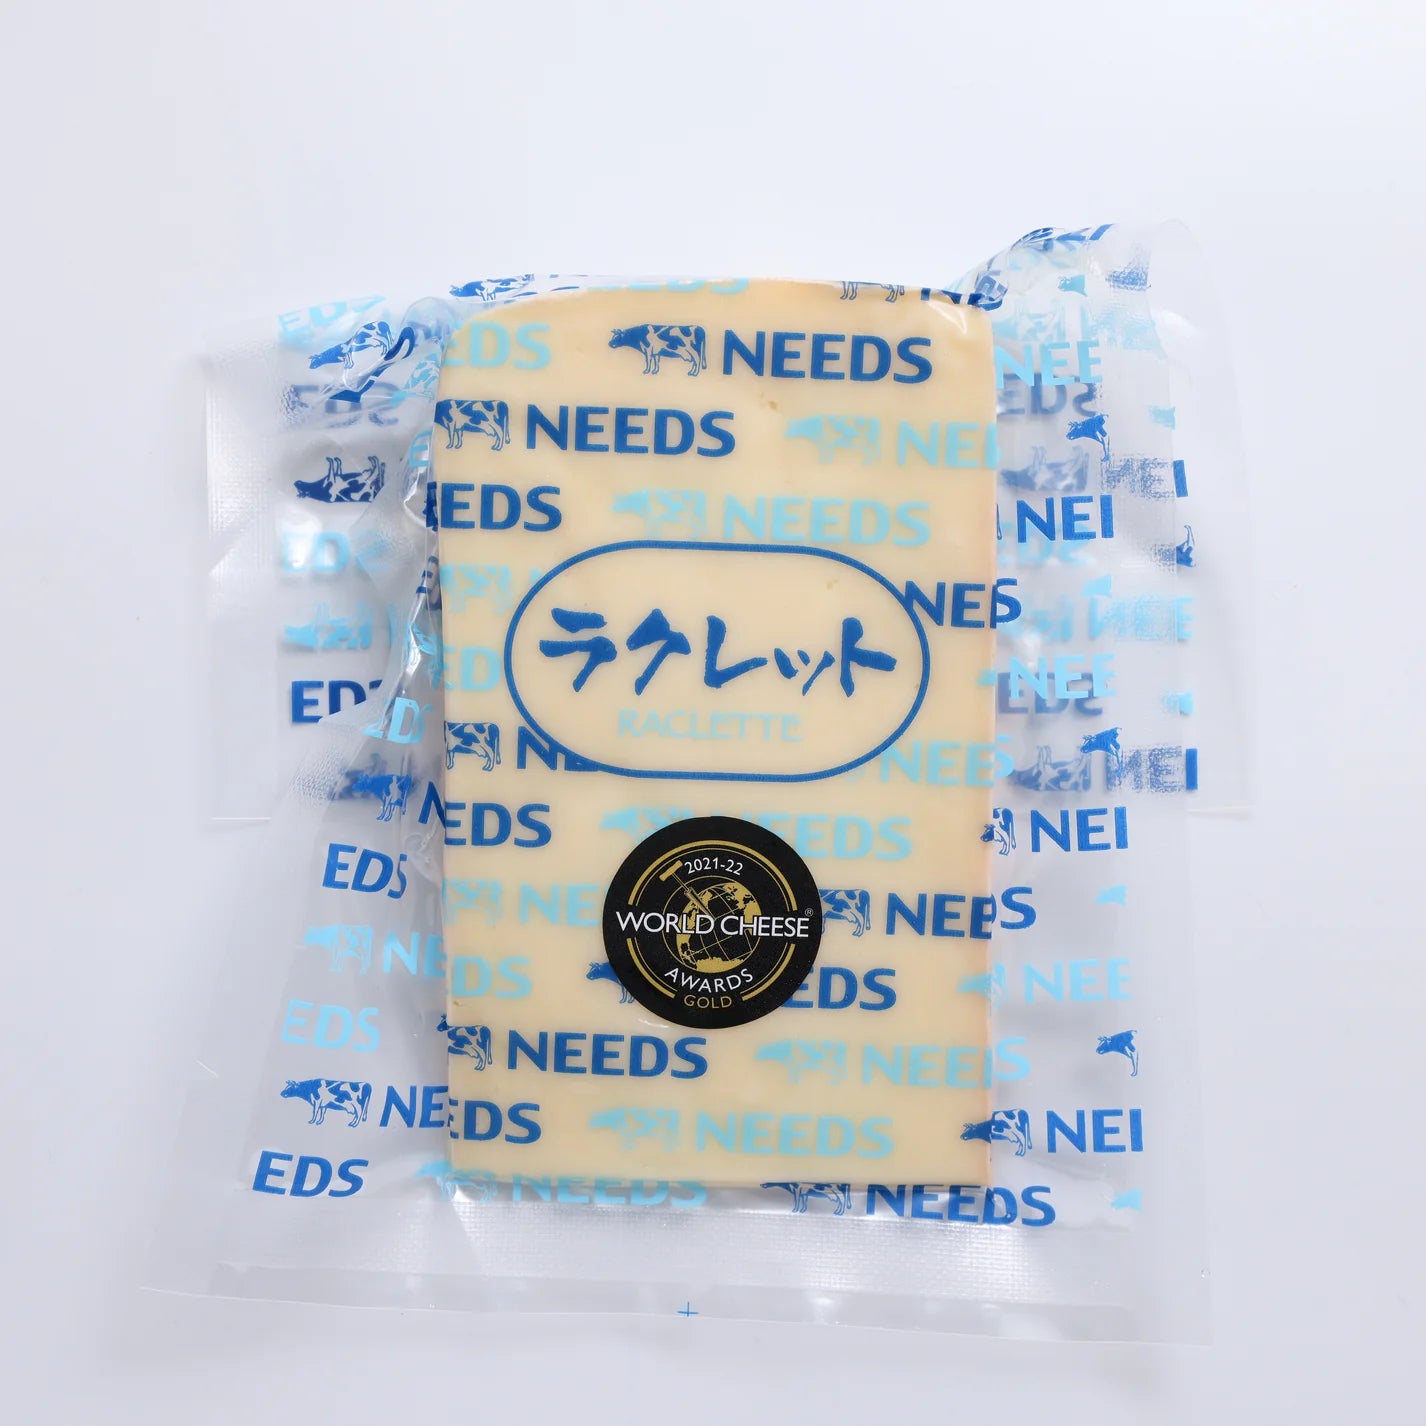 【送料無料】北海道十勝産インカルージュとラクレットチーズ2種類詰め合わせギフト【毎月月初に発送】